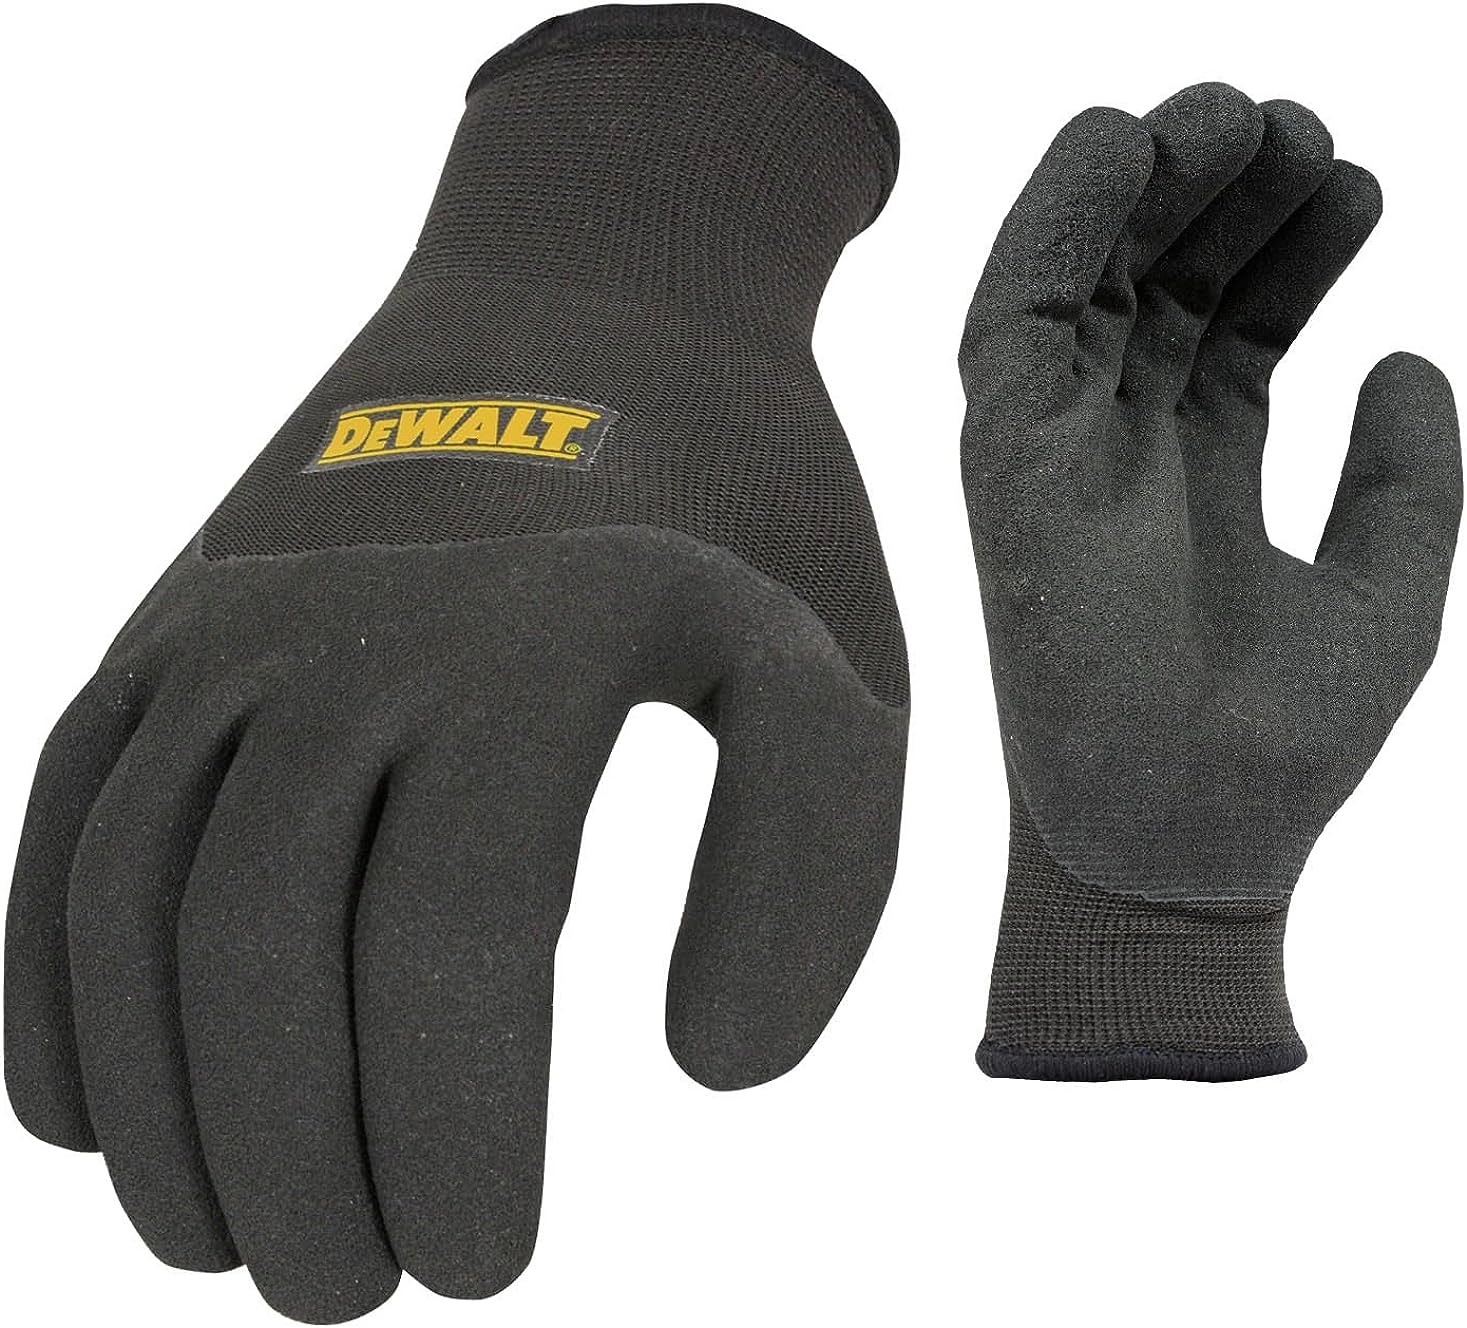 Dewalt Thermal Insulated Grip Glove 2 In 1 Design